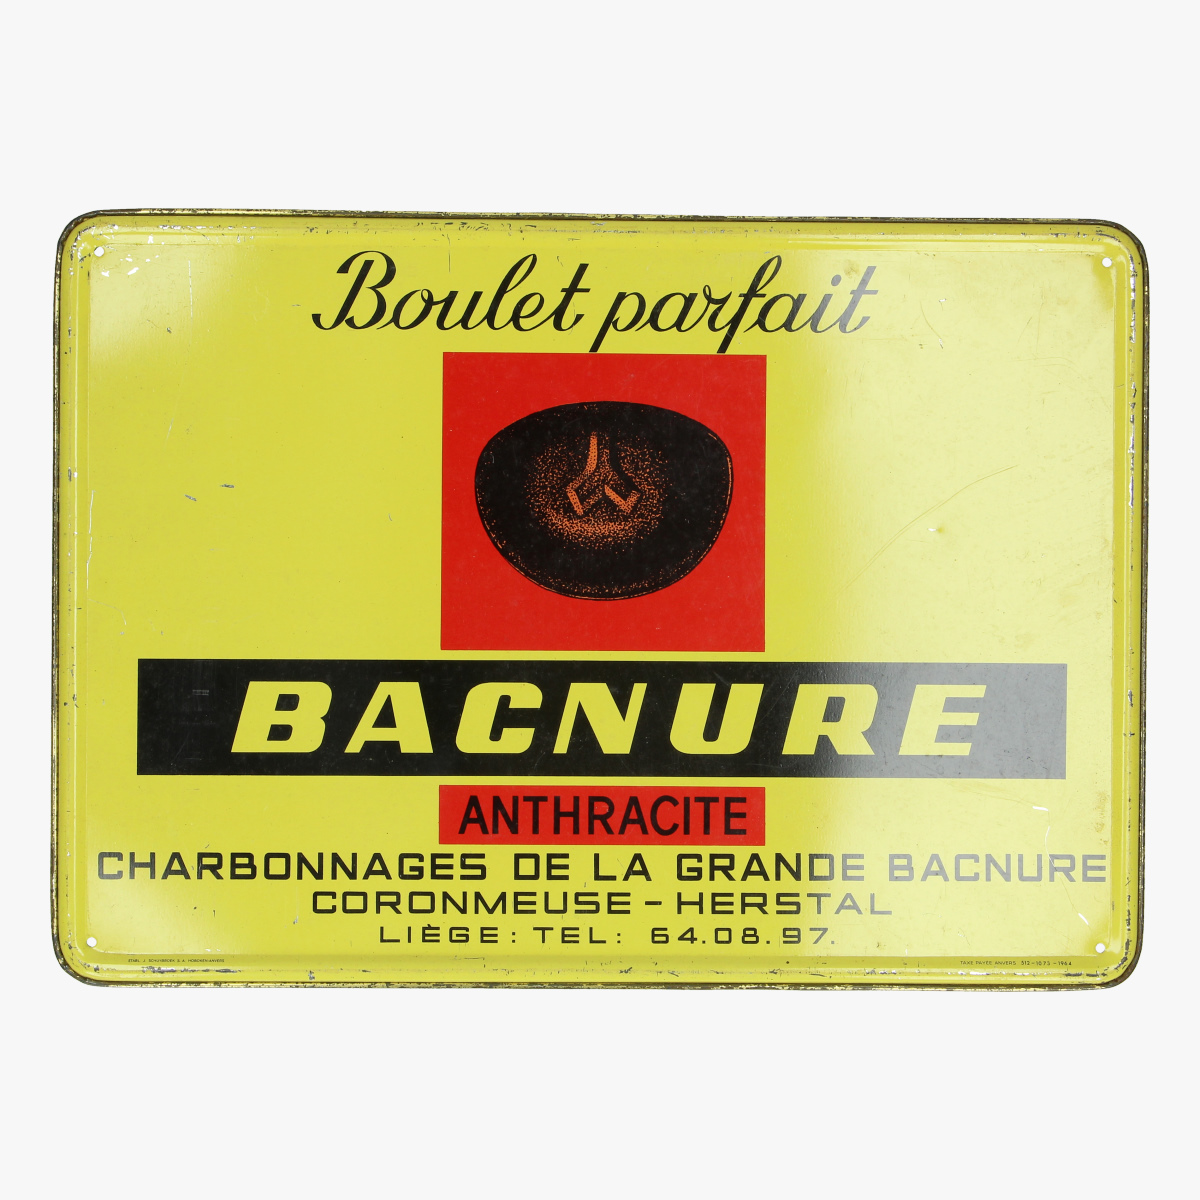 Afbeeldingen van blikken reclame 1964 boulet parfait bacnure antracite 